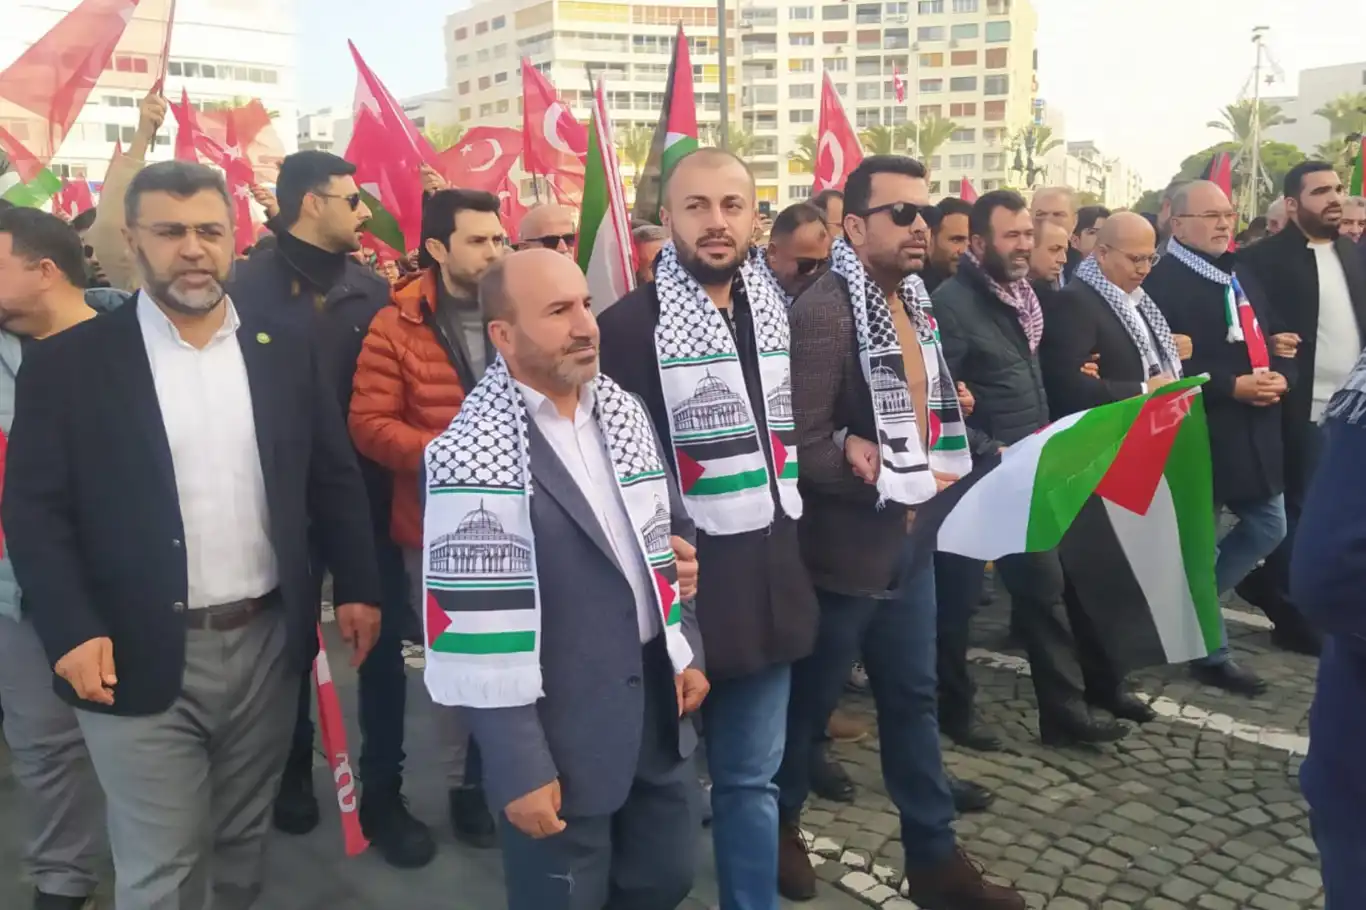 İzmirliler Gazze'deki katliama tepki göstermek için yürüyüş yaptı